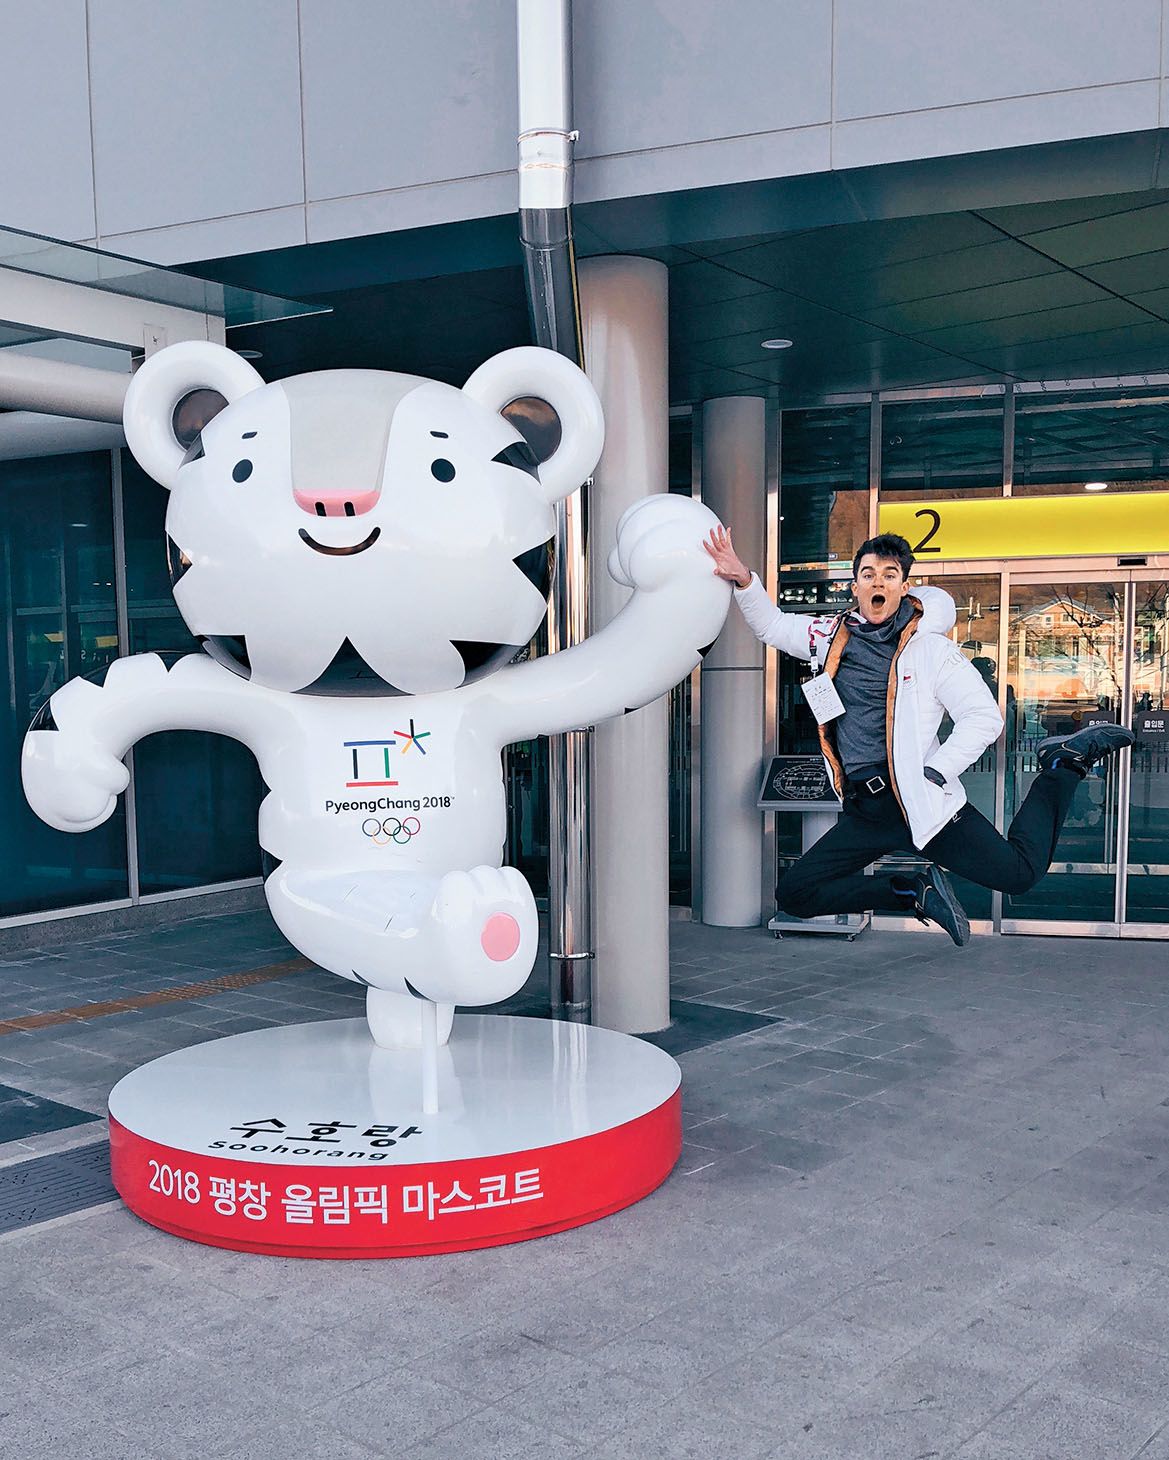 Kovy rád cestuje. Loni v zimě se vydal do Soulu na zimní olympijské hry...